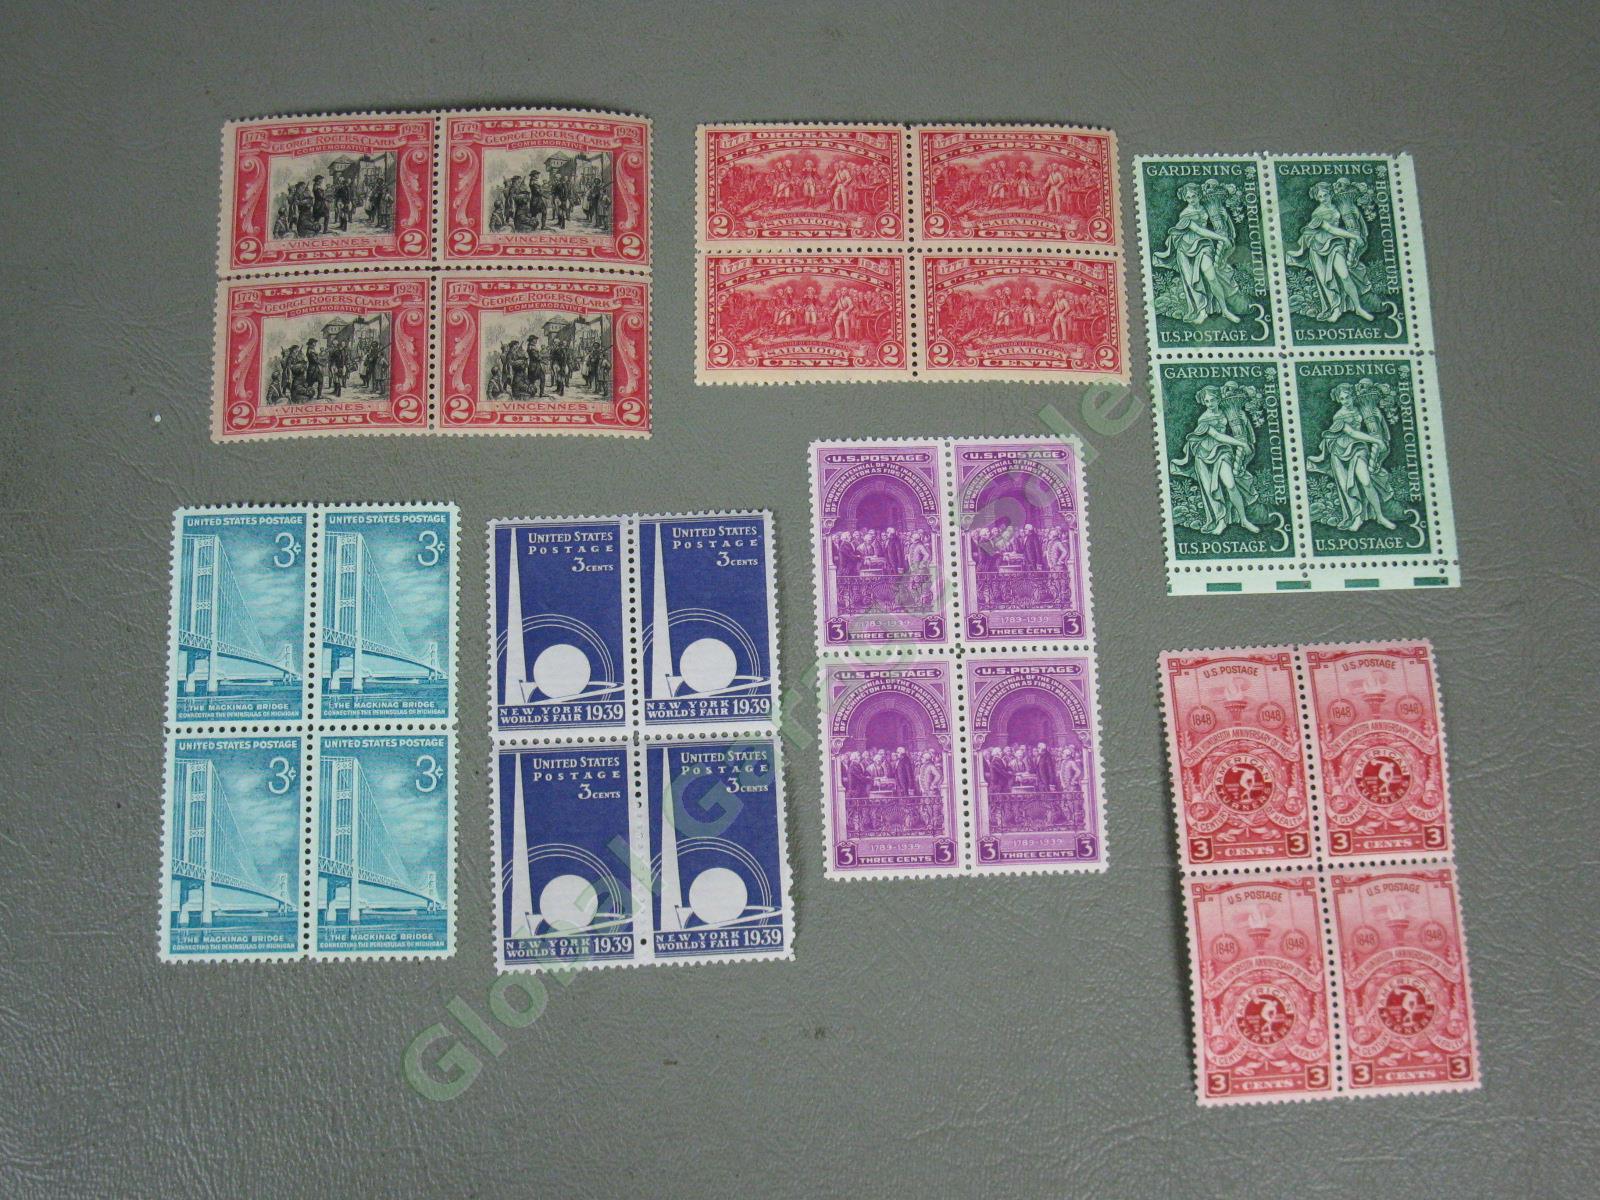 HUGE Vtg 1920s-1990s US Intl Stamp Lot Scott #220-2966 Albums Sheets Mint Sets + 19